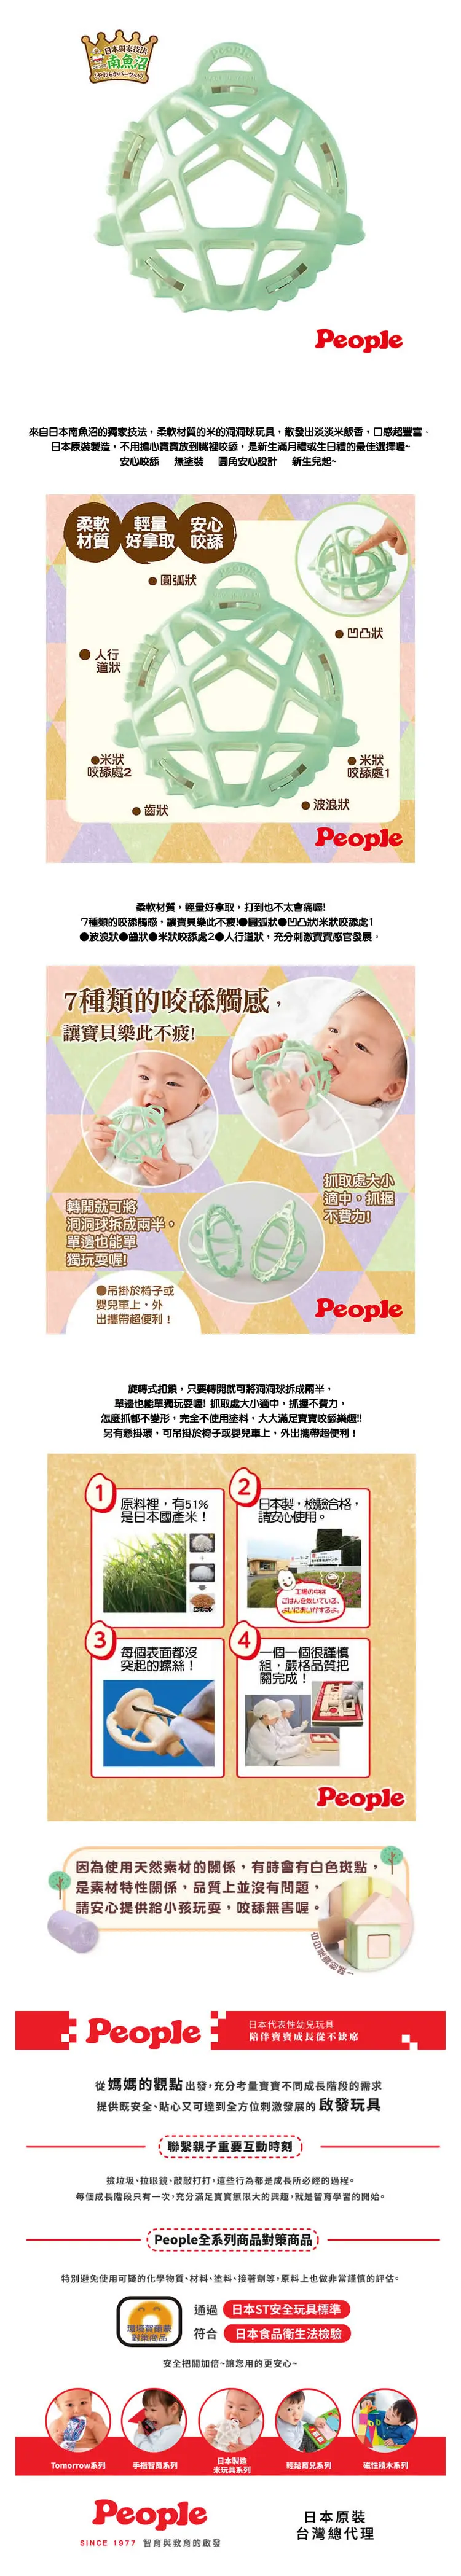 People 嬰兒柔軟手抓球牙膠(米原料)